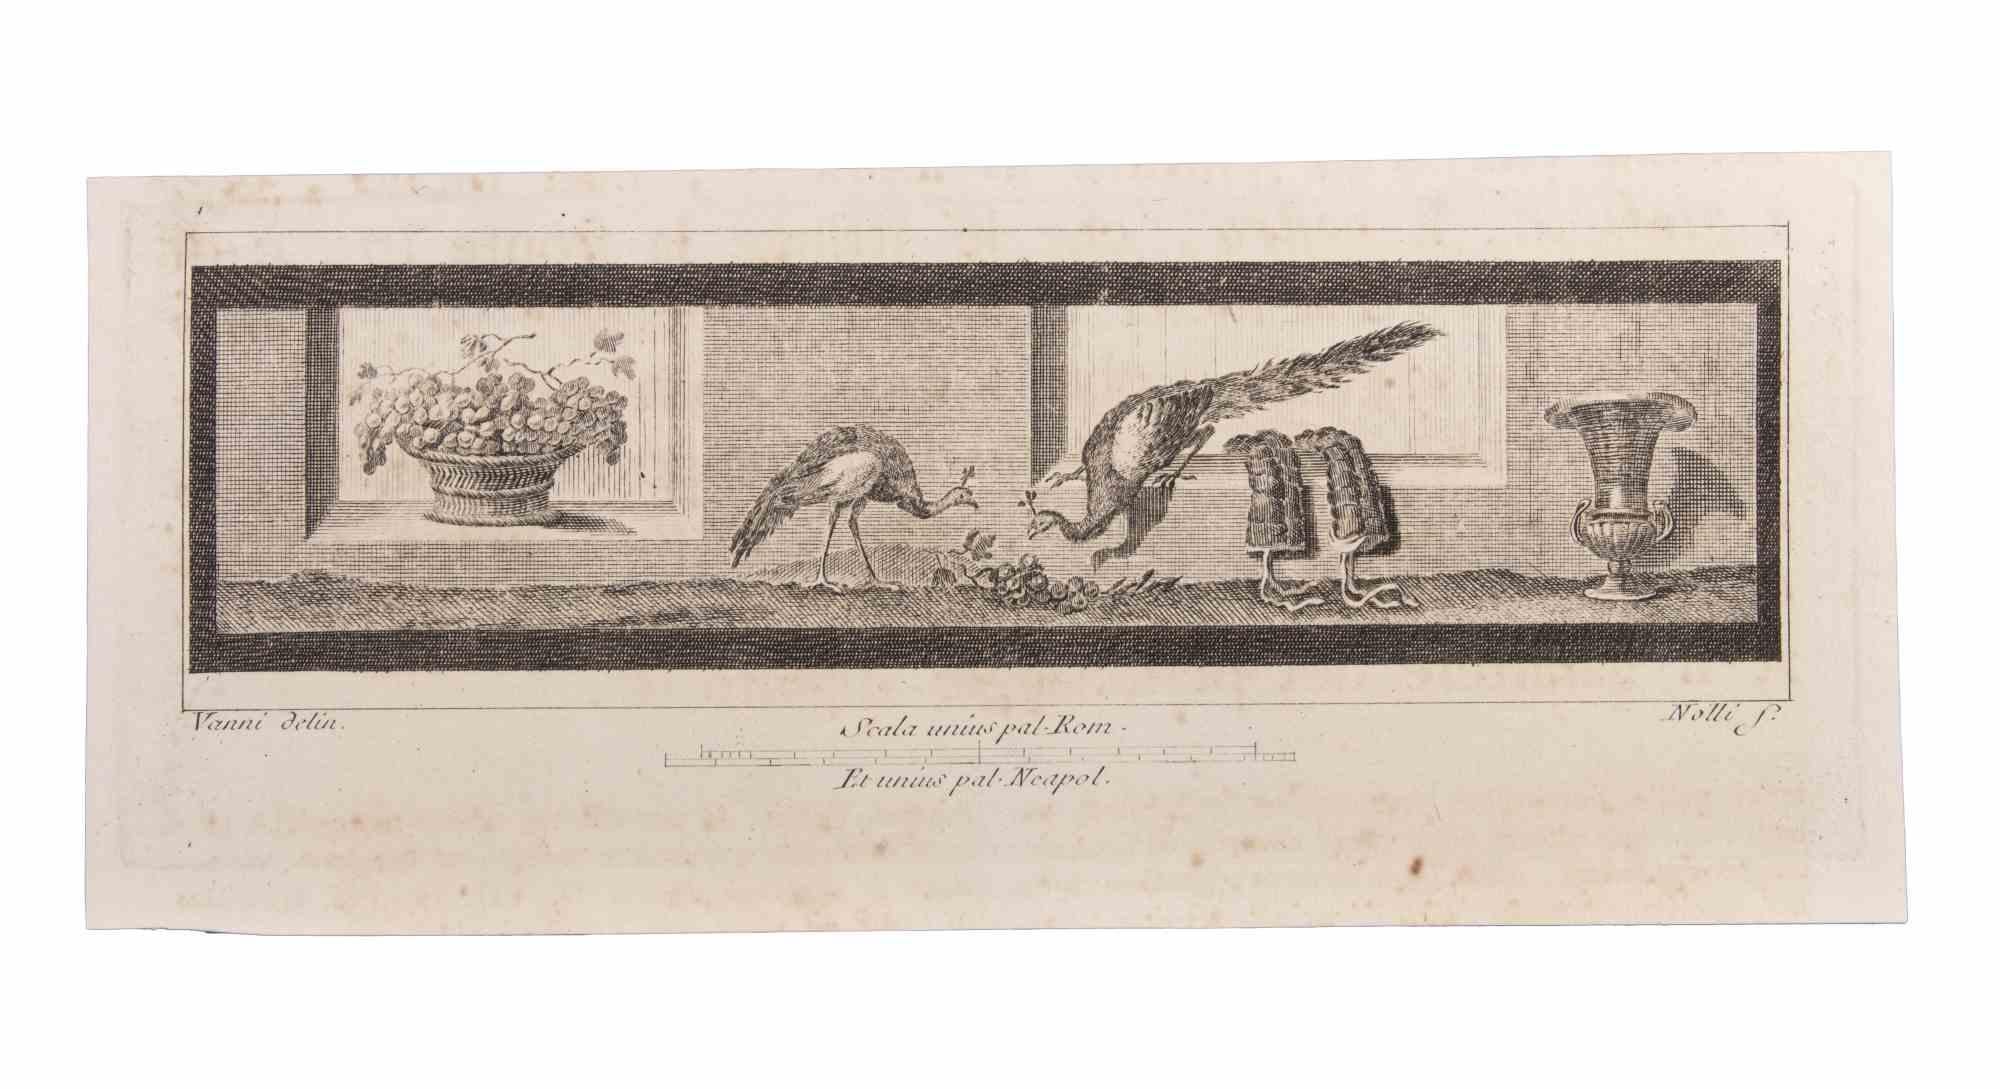 Decoration With Animals ist eine Radierung realisiert von  Niccolò Vanni (1750-1770).

Die Radierung gehört zu der Druckserie "Antiquities of Herculaneum Exposed" (Originaltitel: "Le Antichità di Ercolano Esposte"), einem achtbändigen Band mit